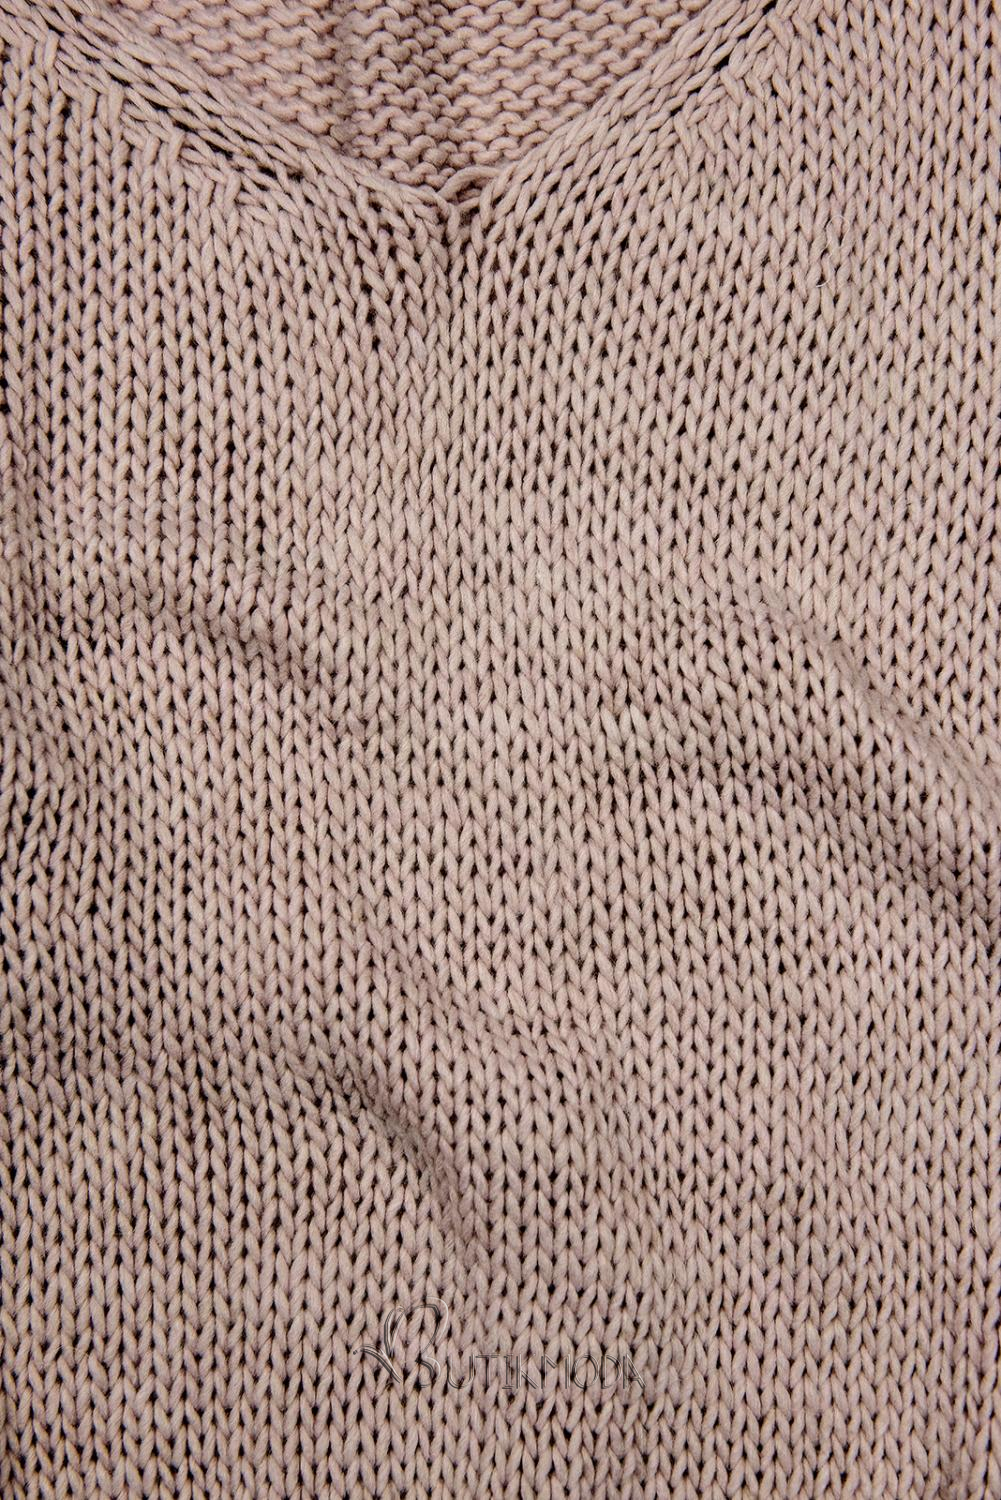 Vintage rózsaszínű kötött pulóver